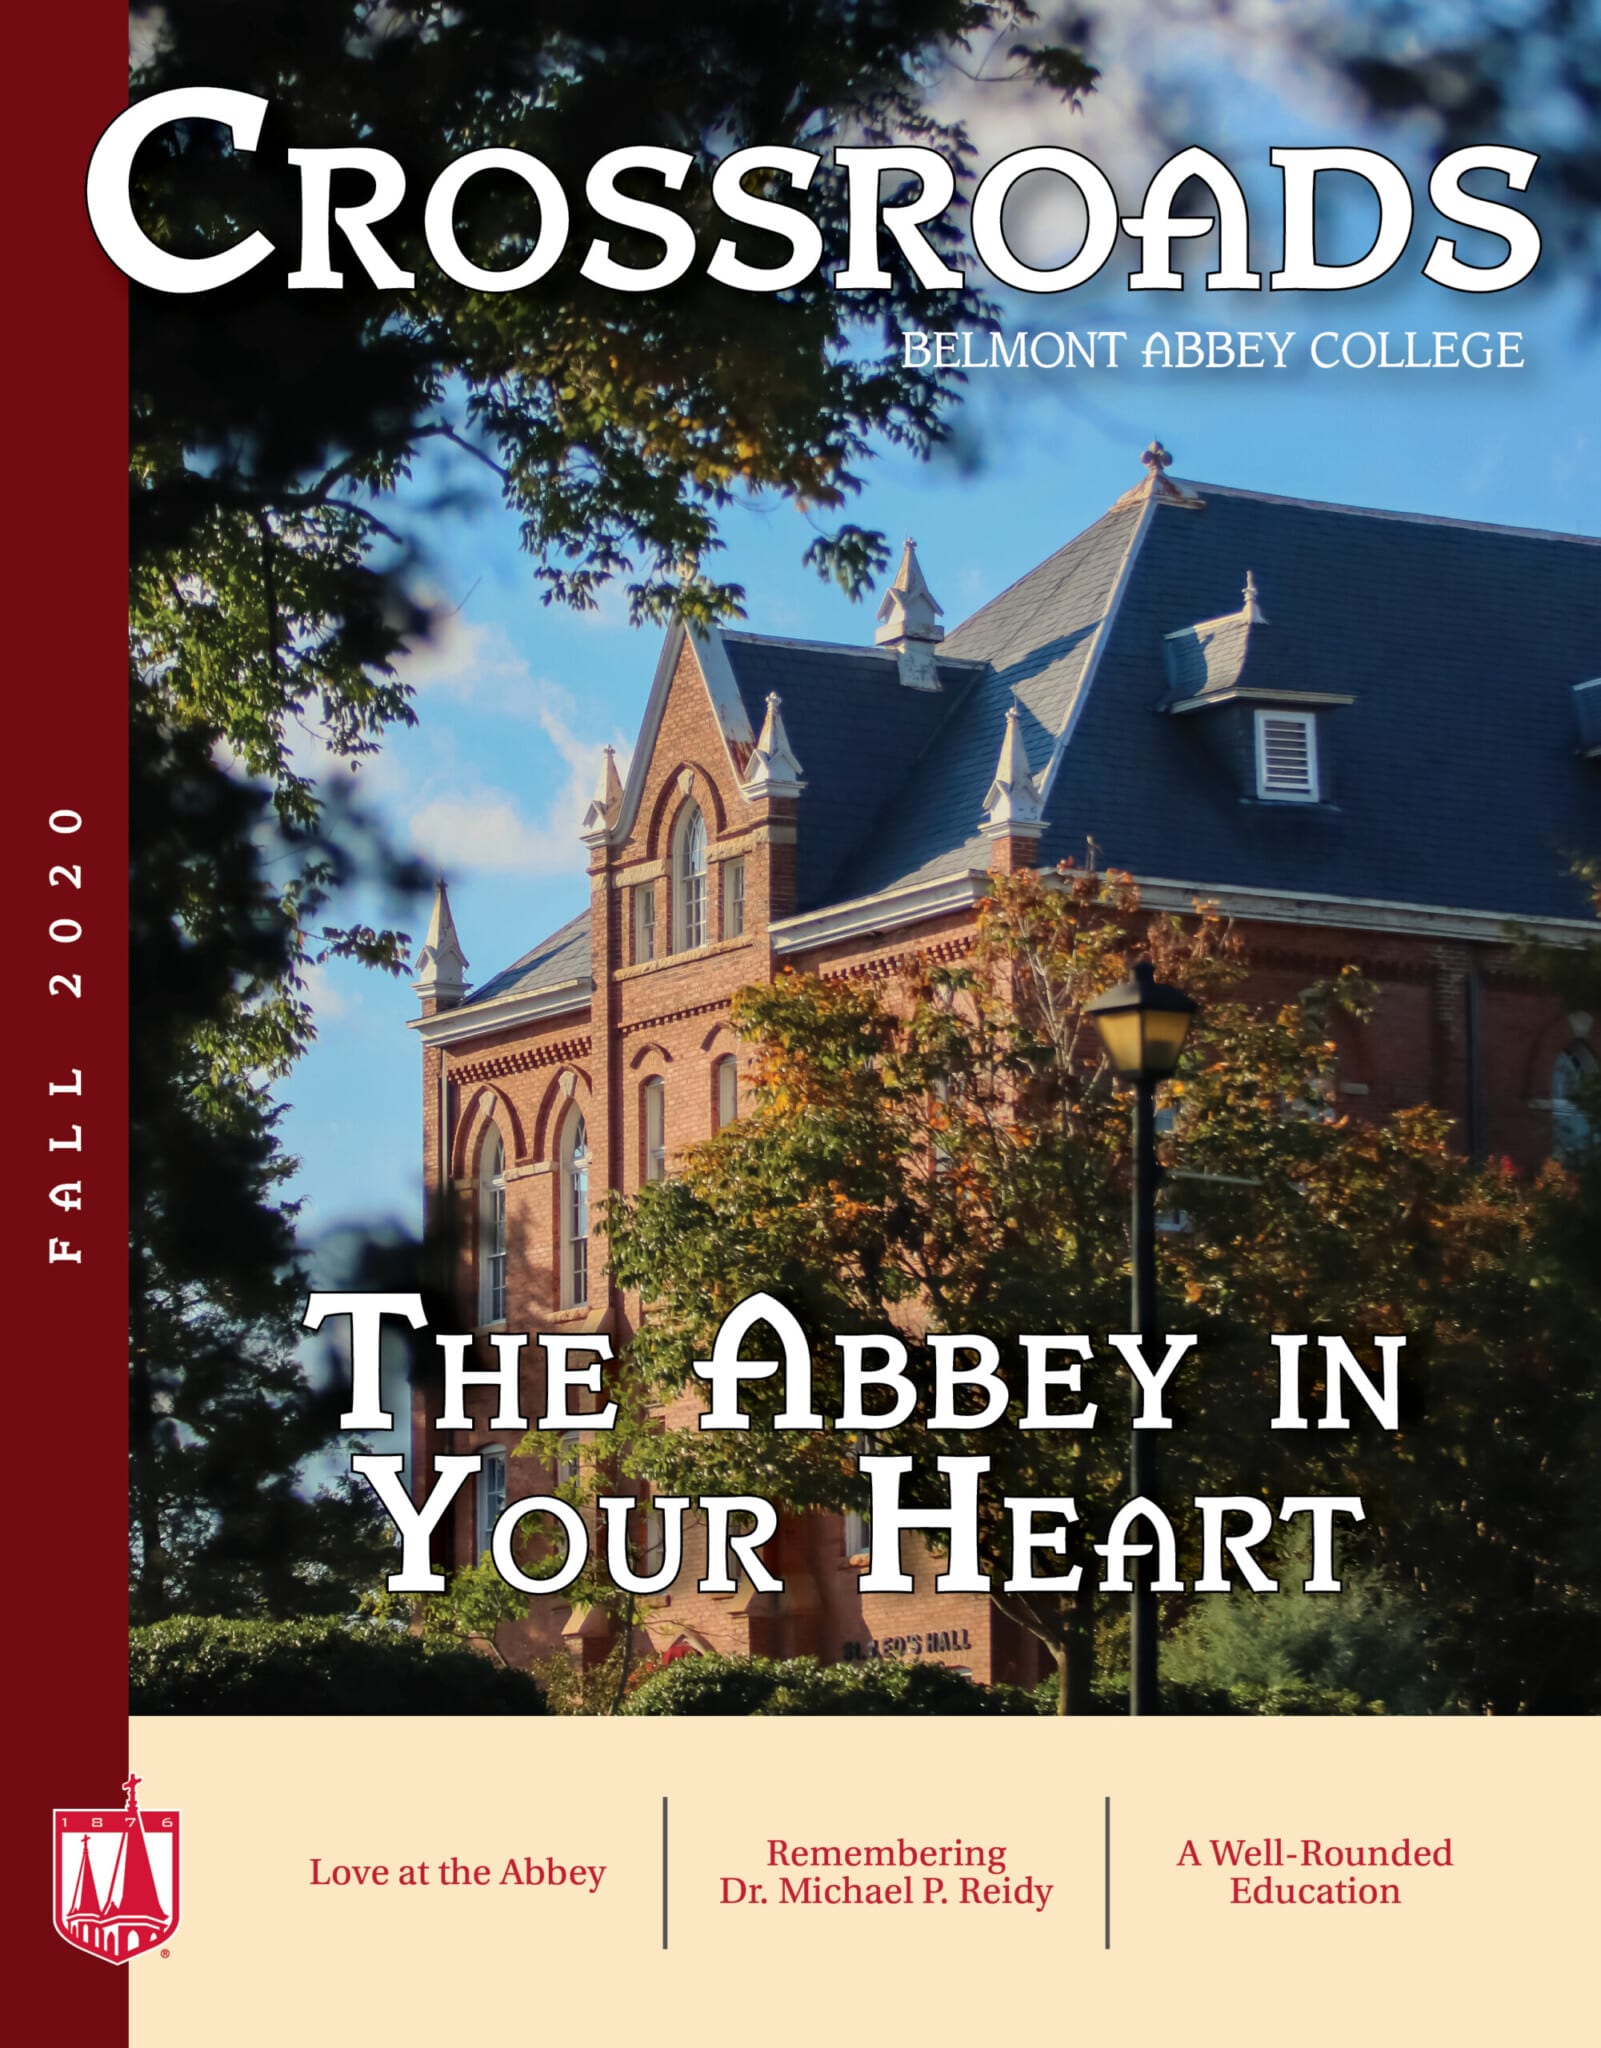 Crossroads Fall 2020 Belmont Abbey College